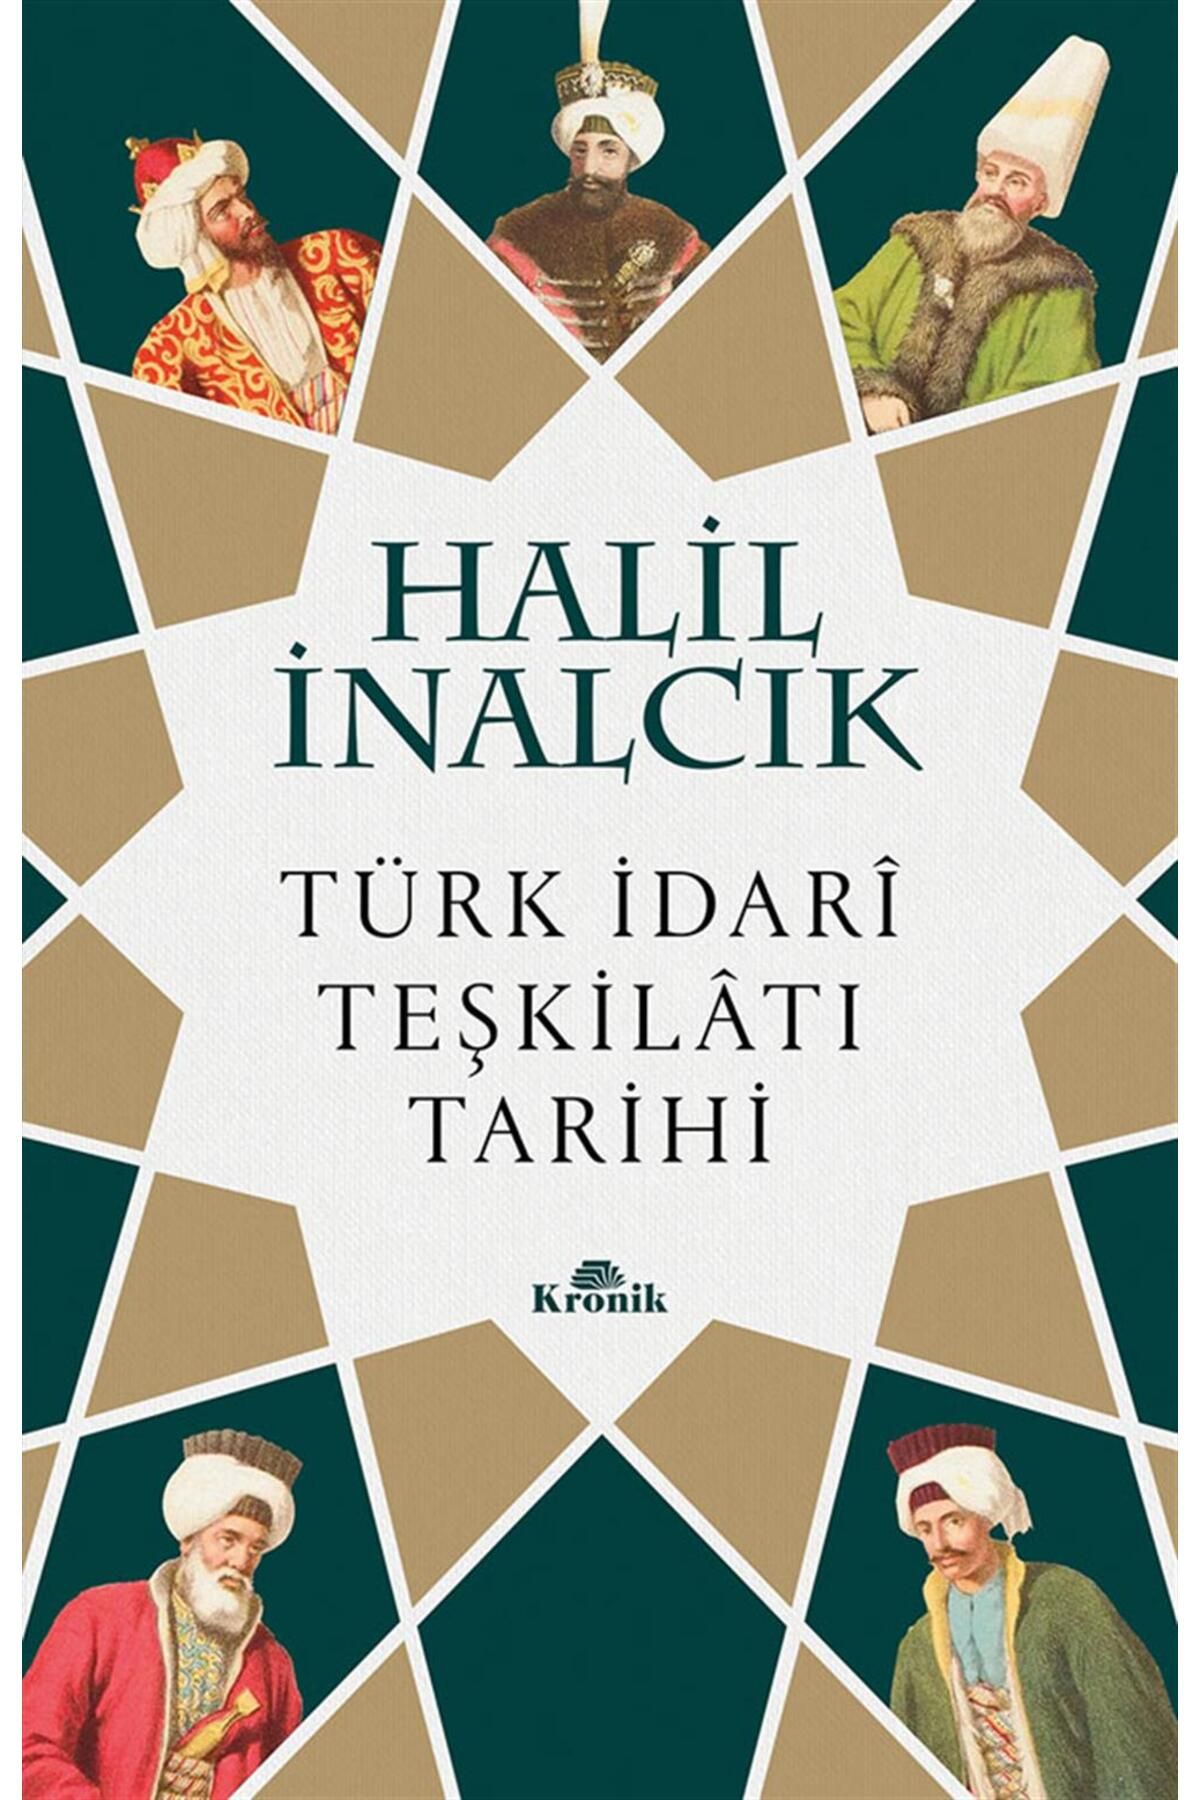 Kronik Kitap Türk I?dari Teşkilatı Tarihi